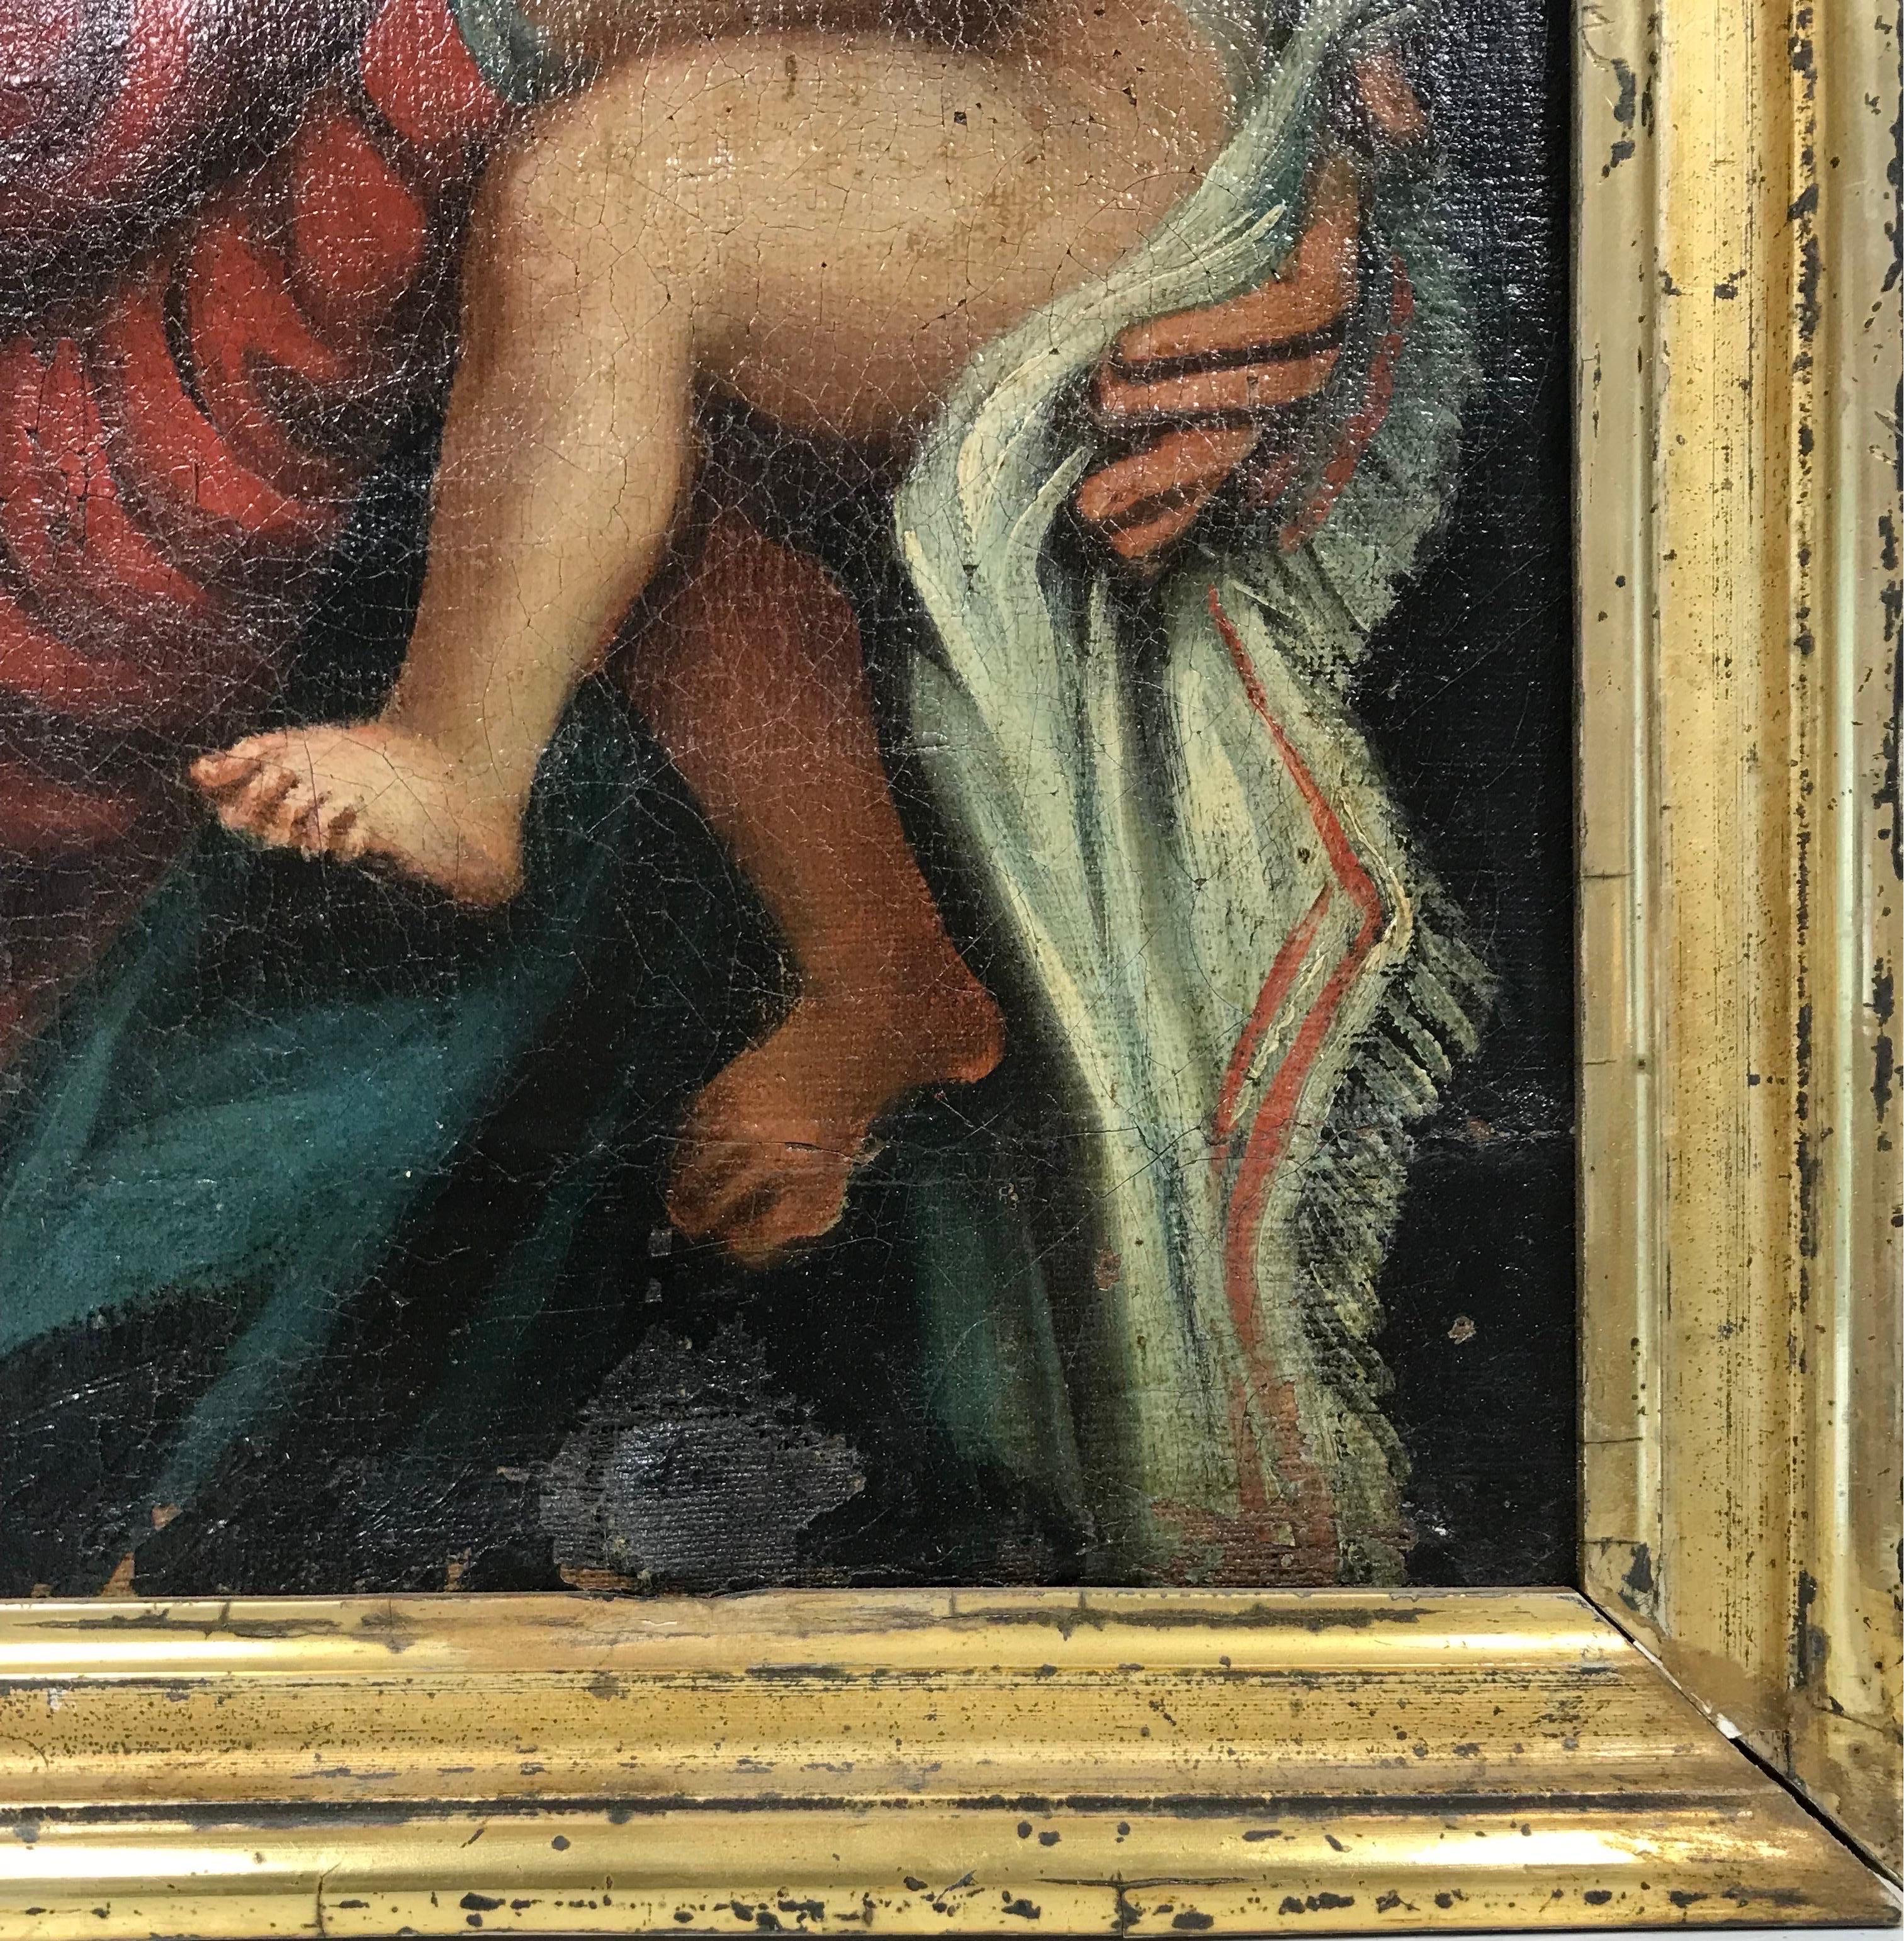 Mary & Jesus, Französisches Ölgemälde eines alten Meisters auf Leinwand, 18. Jahrhundert (Alte Meister), Painting, von 18th Century French Old Master